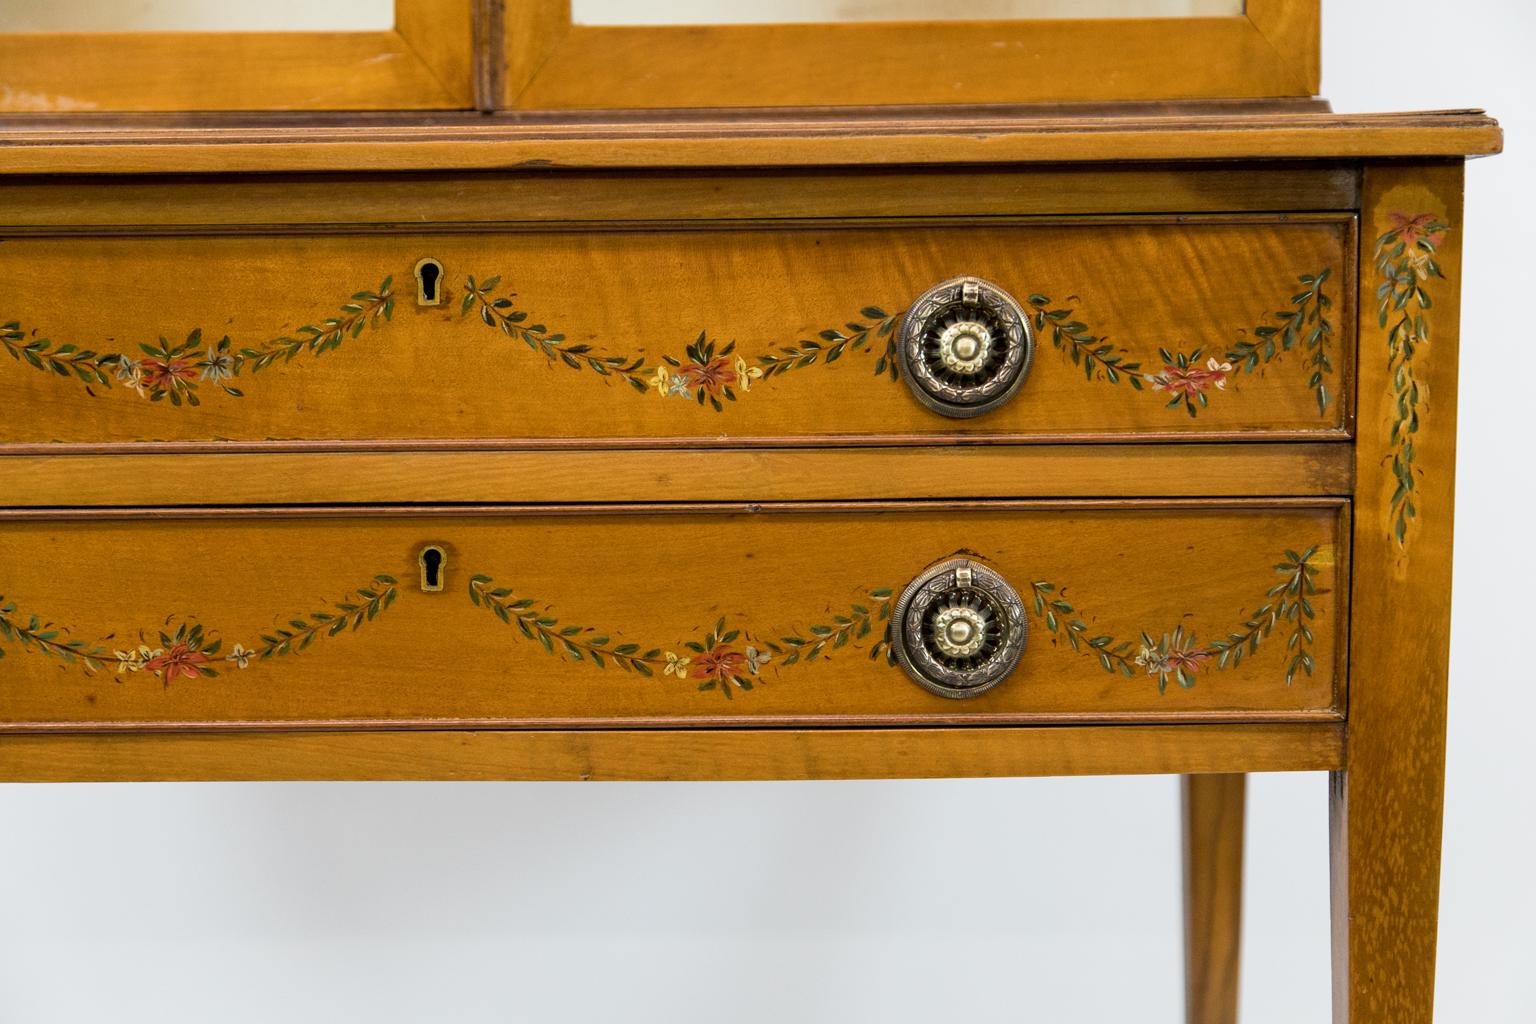 Die Vitrine aus lackiertem englischem Satinholz ist mit floralen Blatt- und Bandmotiven bemalt.
 